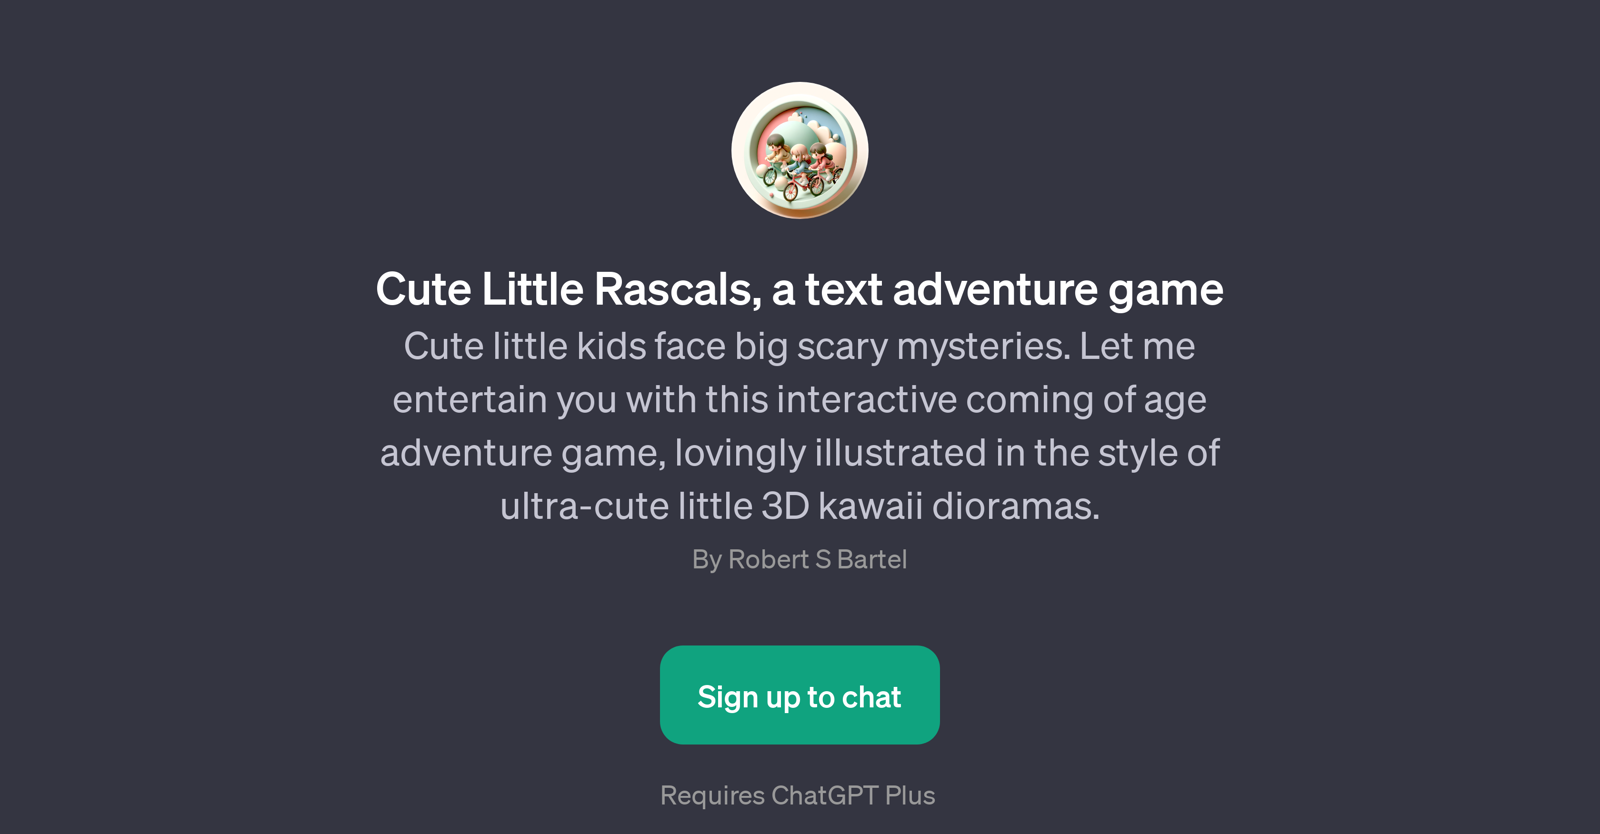 Cute Little Rascals website